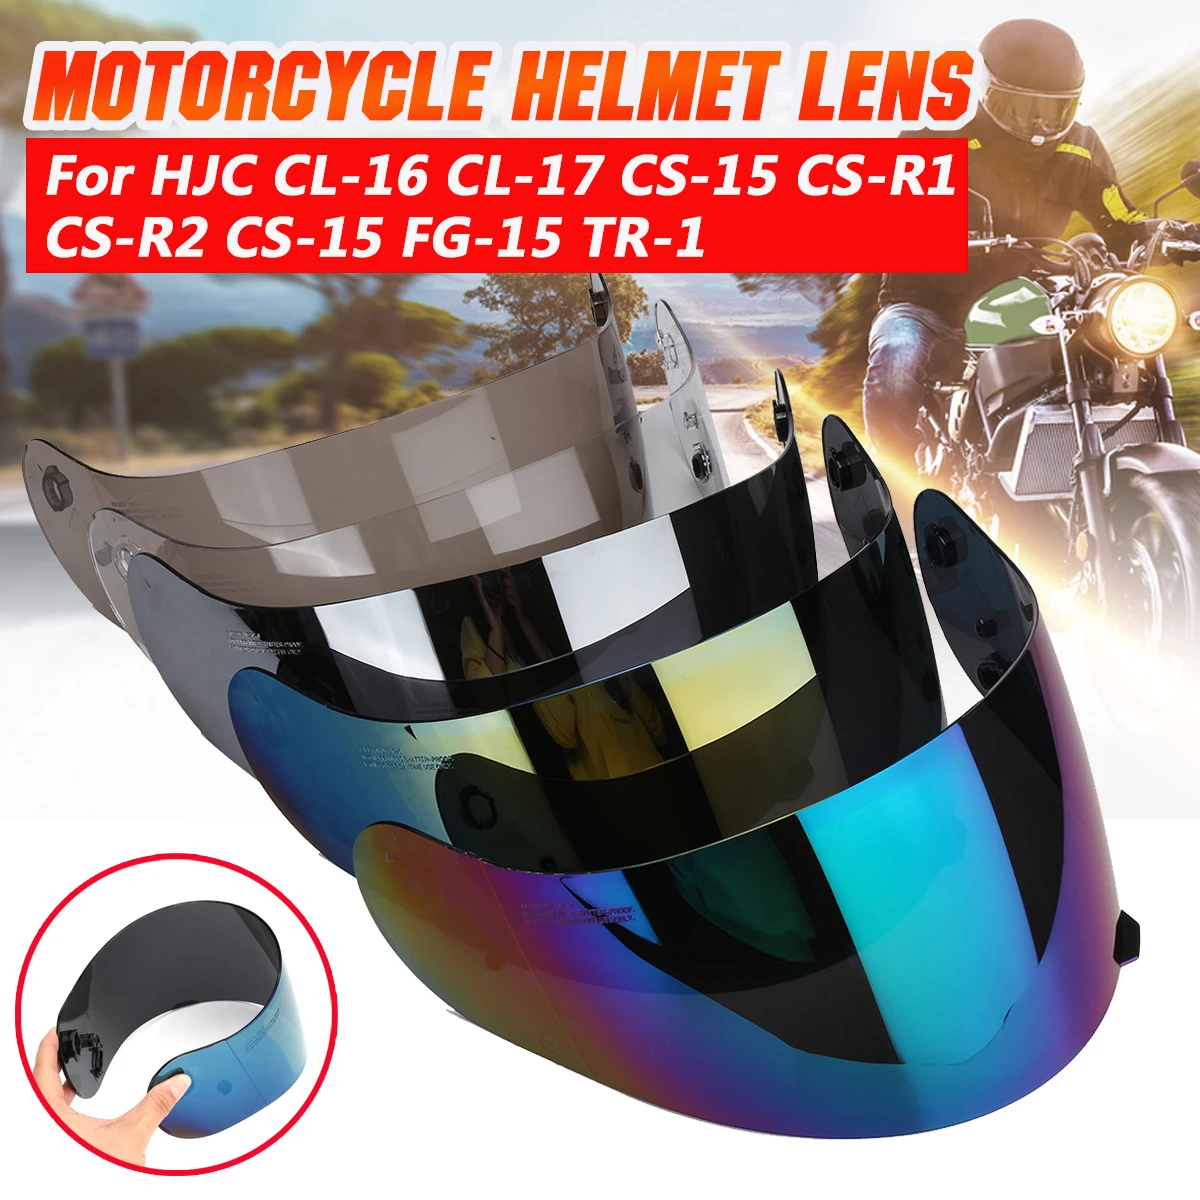 For HJC CL-16 CL-17 CS-15 CS-R1 CS-R2 CS-15 FG-15 TR-1 Motorcycle Helmet Lens helmet visor